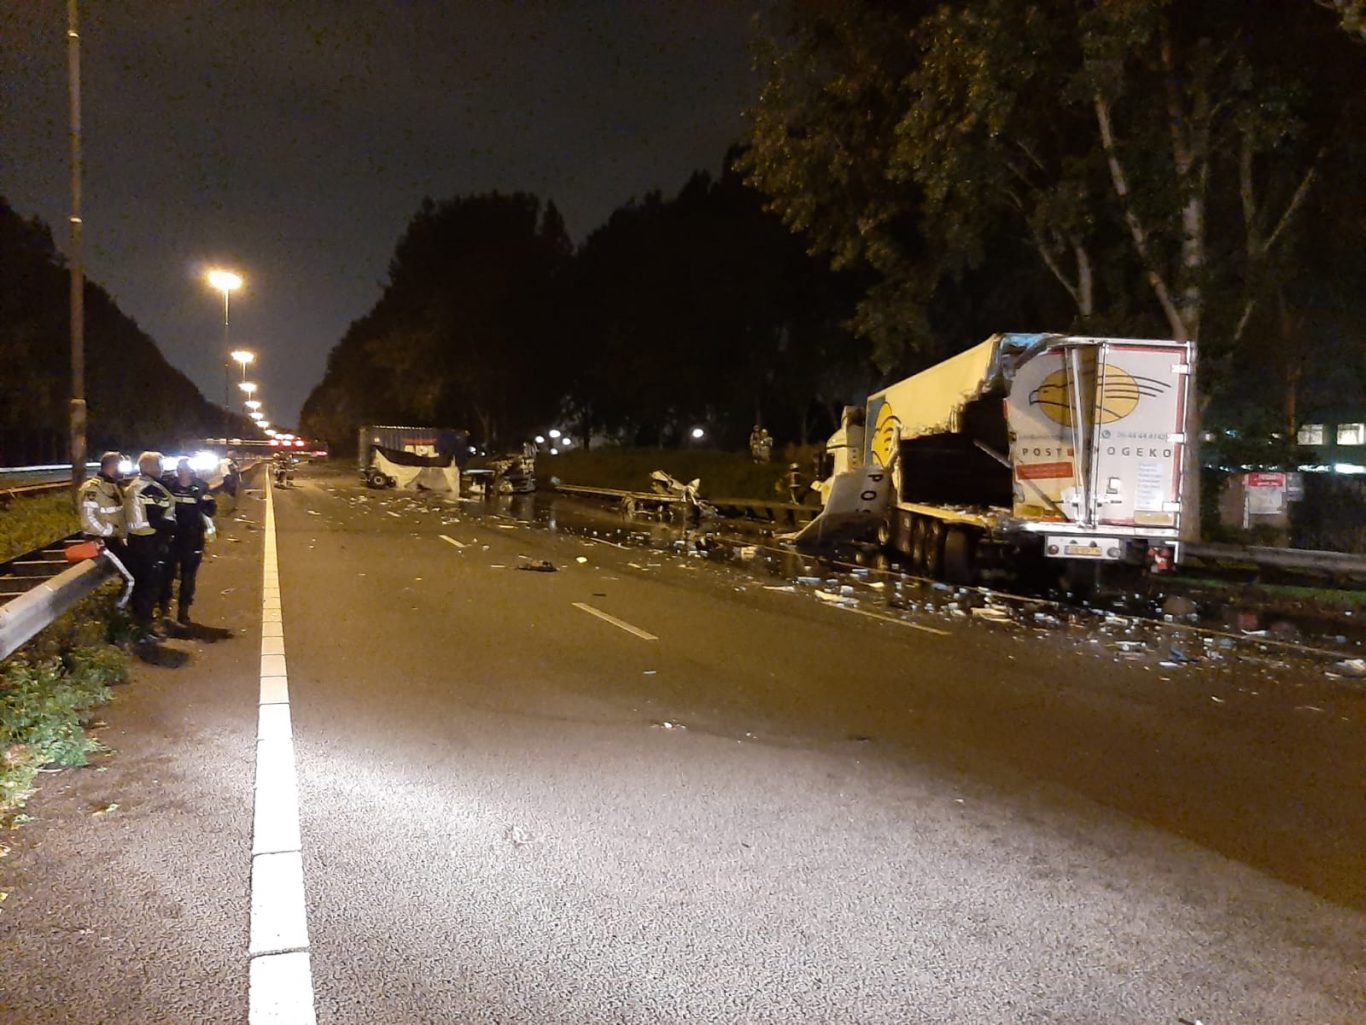 Ongeval met twee vrachtwagens op A20 bij Nieuwerkerk aan den IJssel | Gouwe IJssel Nieuws - Gouwe IJssel Nieuws